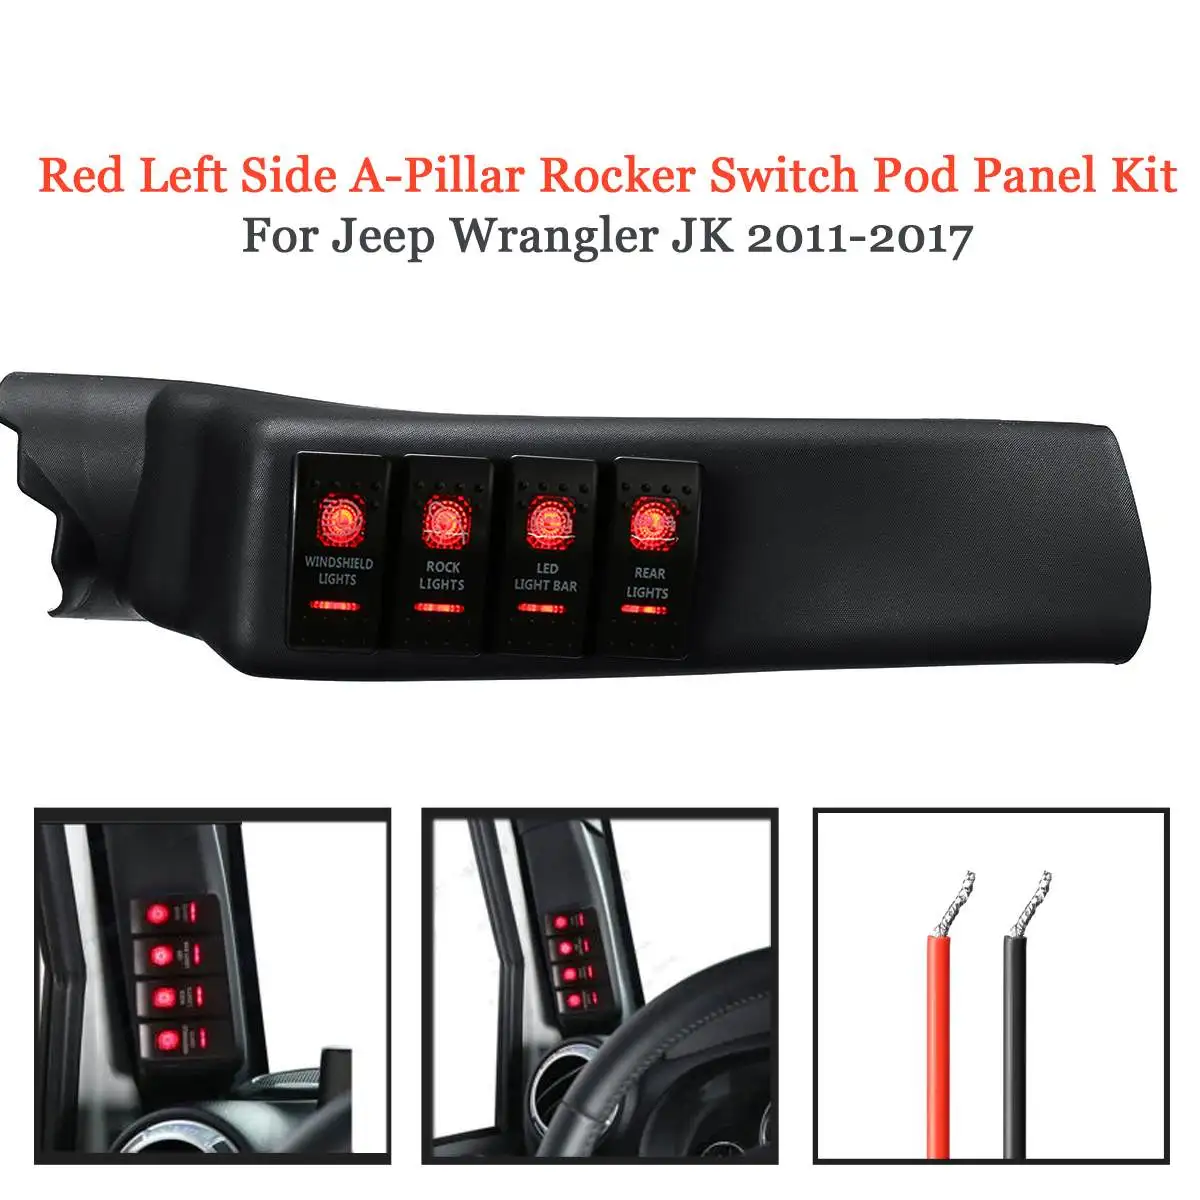 Attiecībā par Jeep Wrangler JK 2011-2017/2011-2018 Auto Kreiso Sānu balsts Slēdzis Pod Panelis 4 Laivu Šūpuļzirgs Slēdzis Panelī Zilās/Sarkanās Gaismas